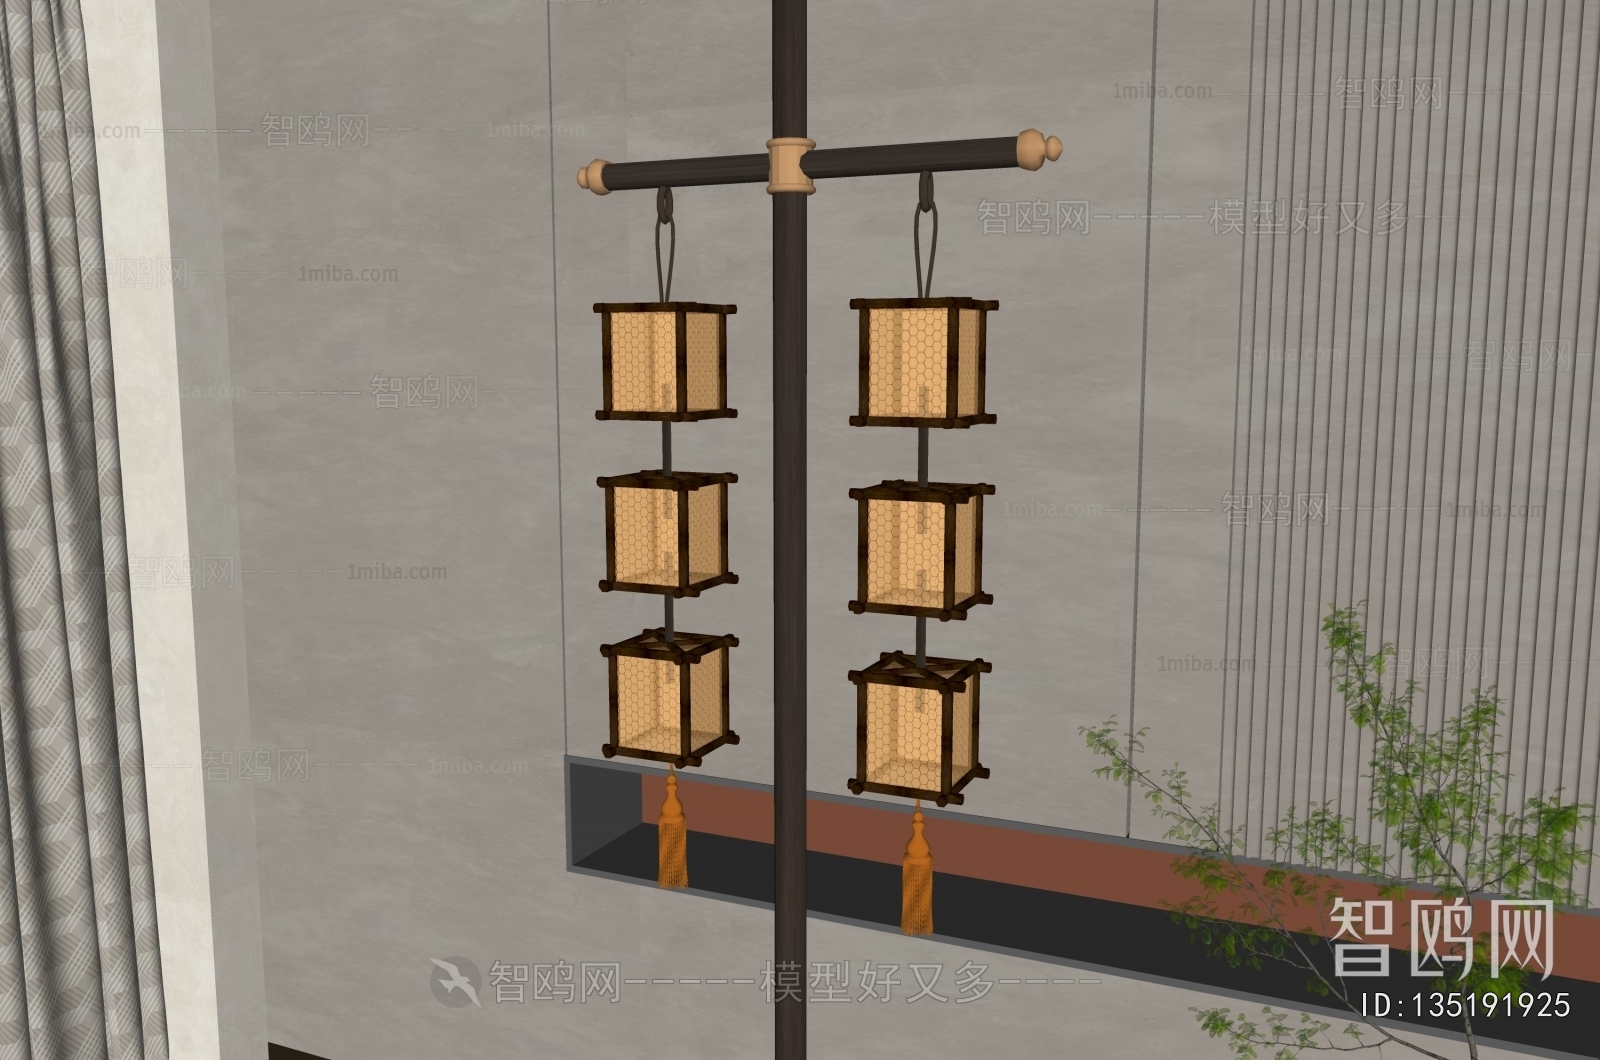 New Chinese Style Lantern